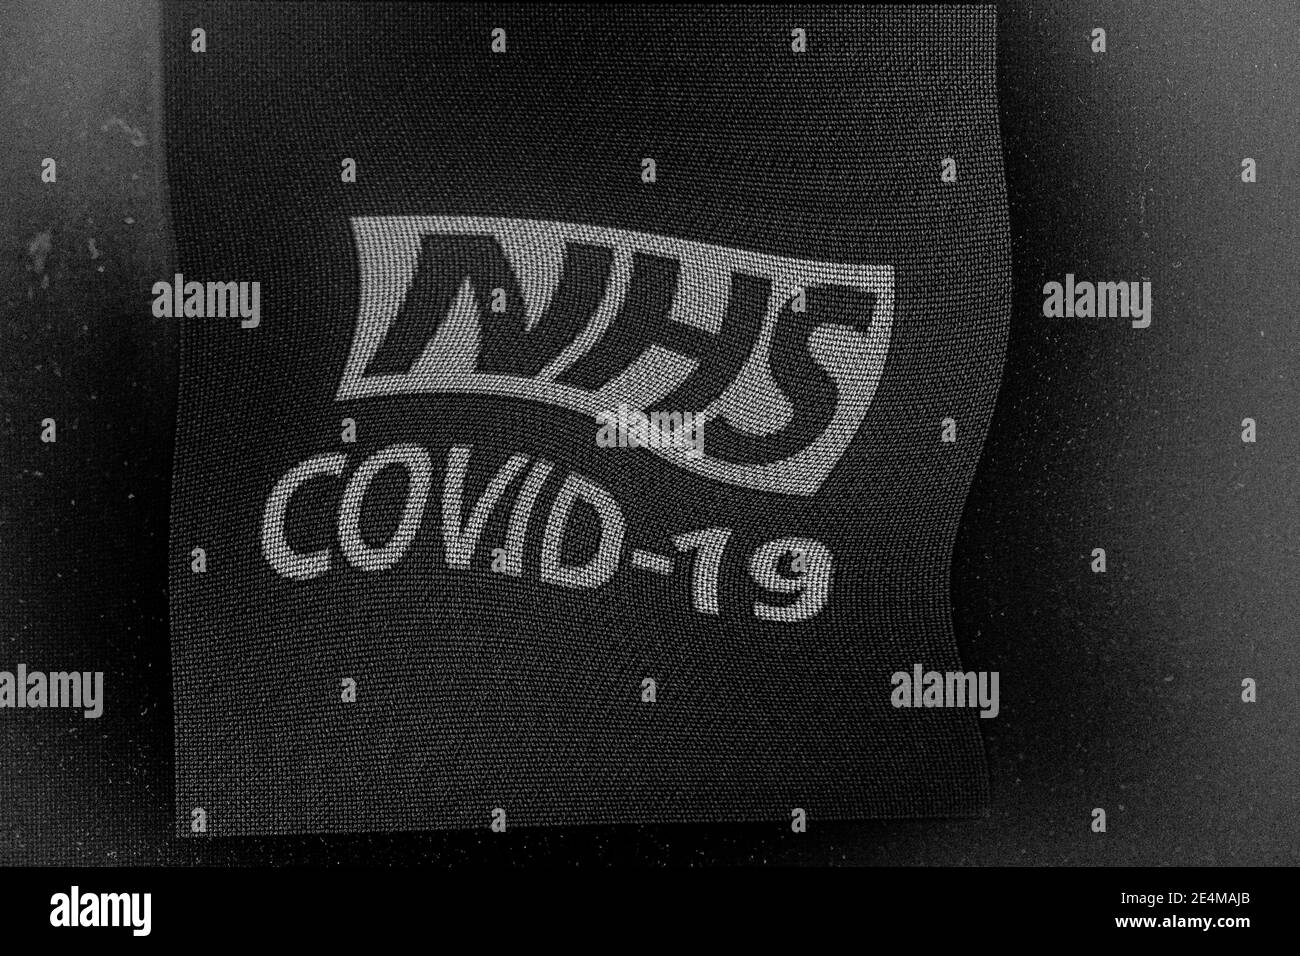 Eine Nahaufnahme des verzerrten NHS COVID-19 Kontaktverfolgungs-Logos zur Überwachung der Ausbreitung der COVID-19-Pandemie in England und Wales. Stockfoto